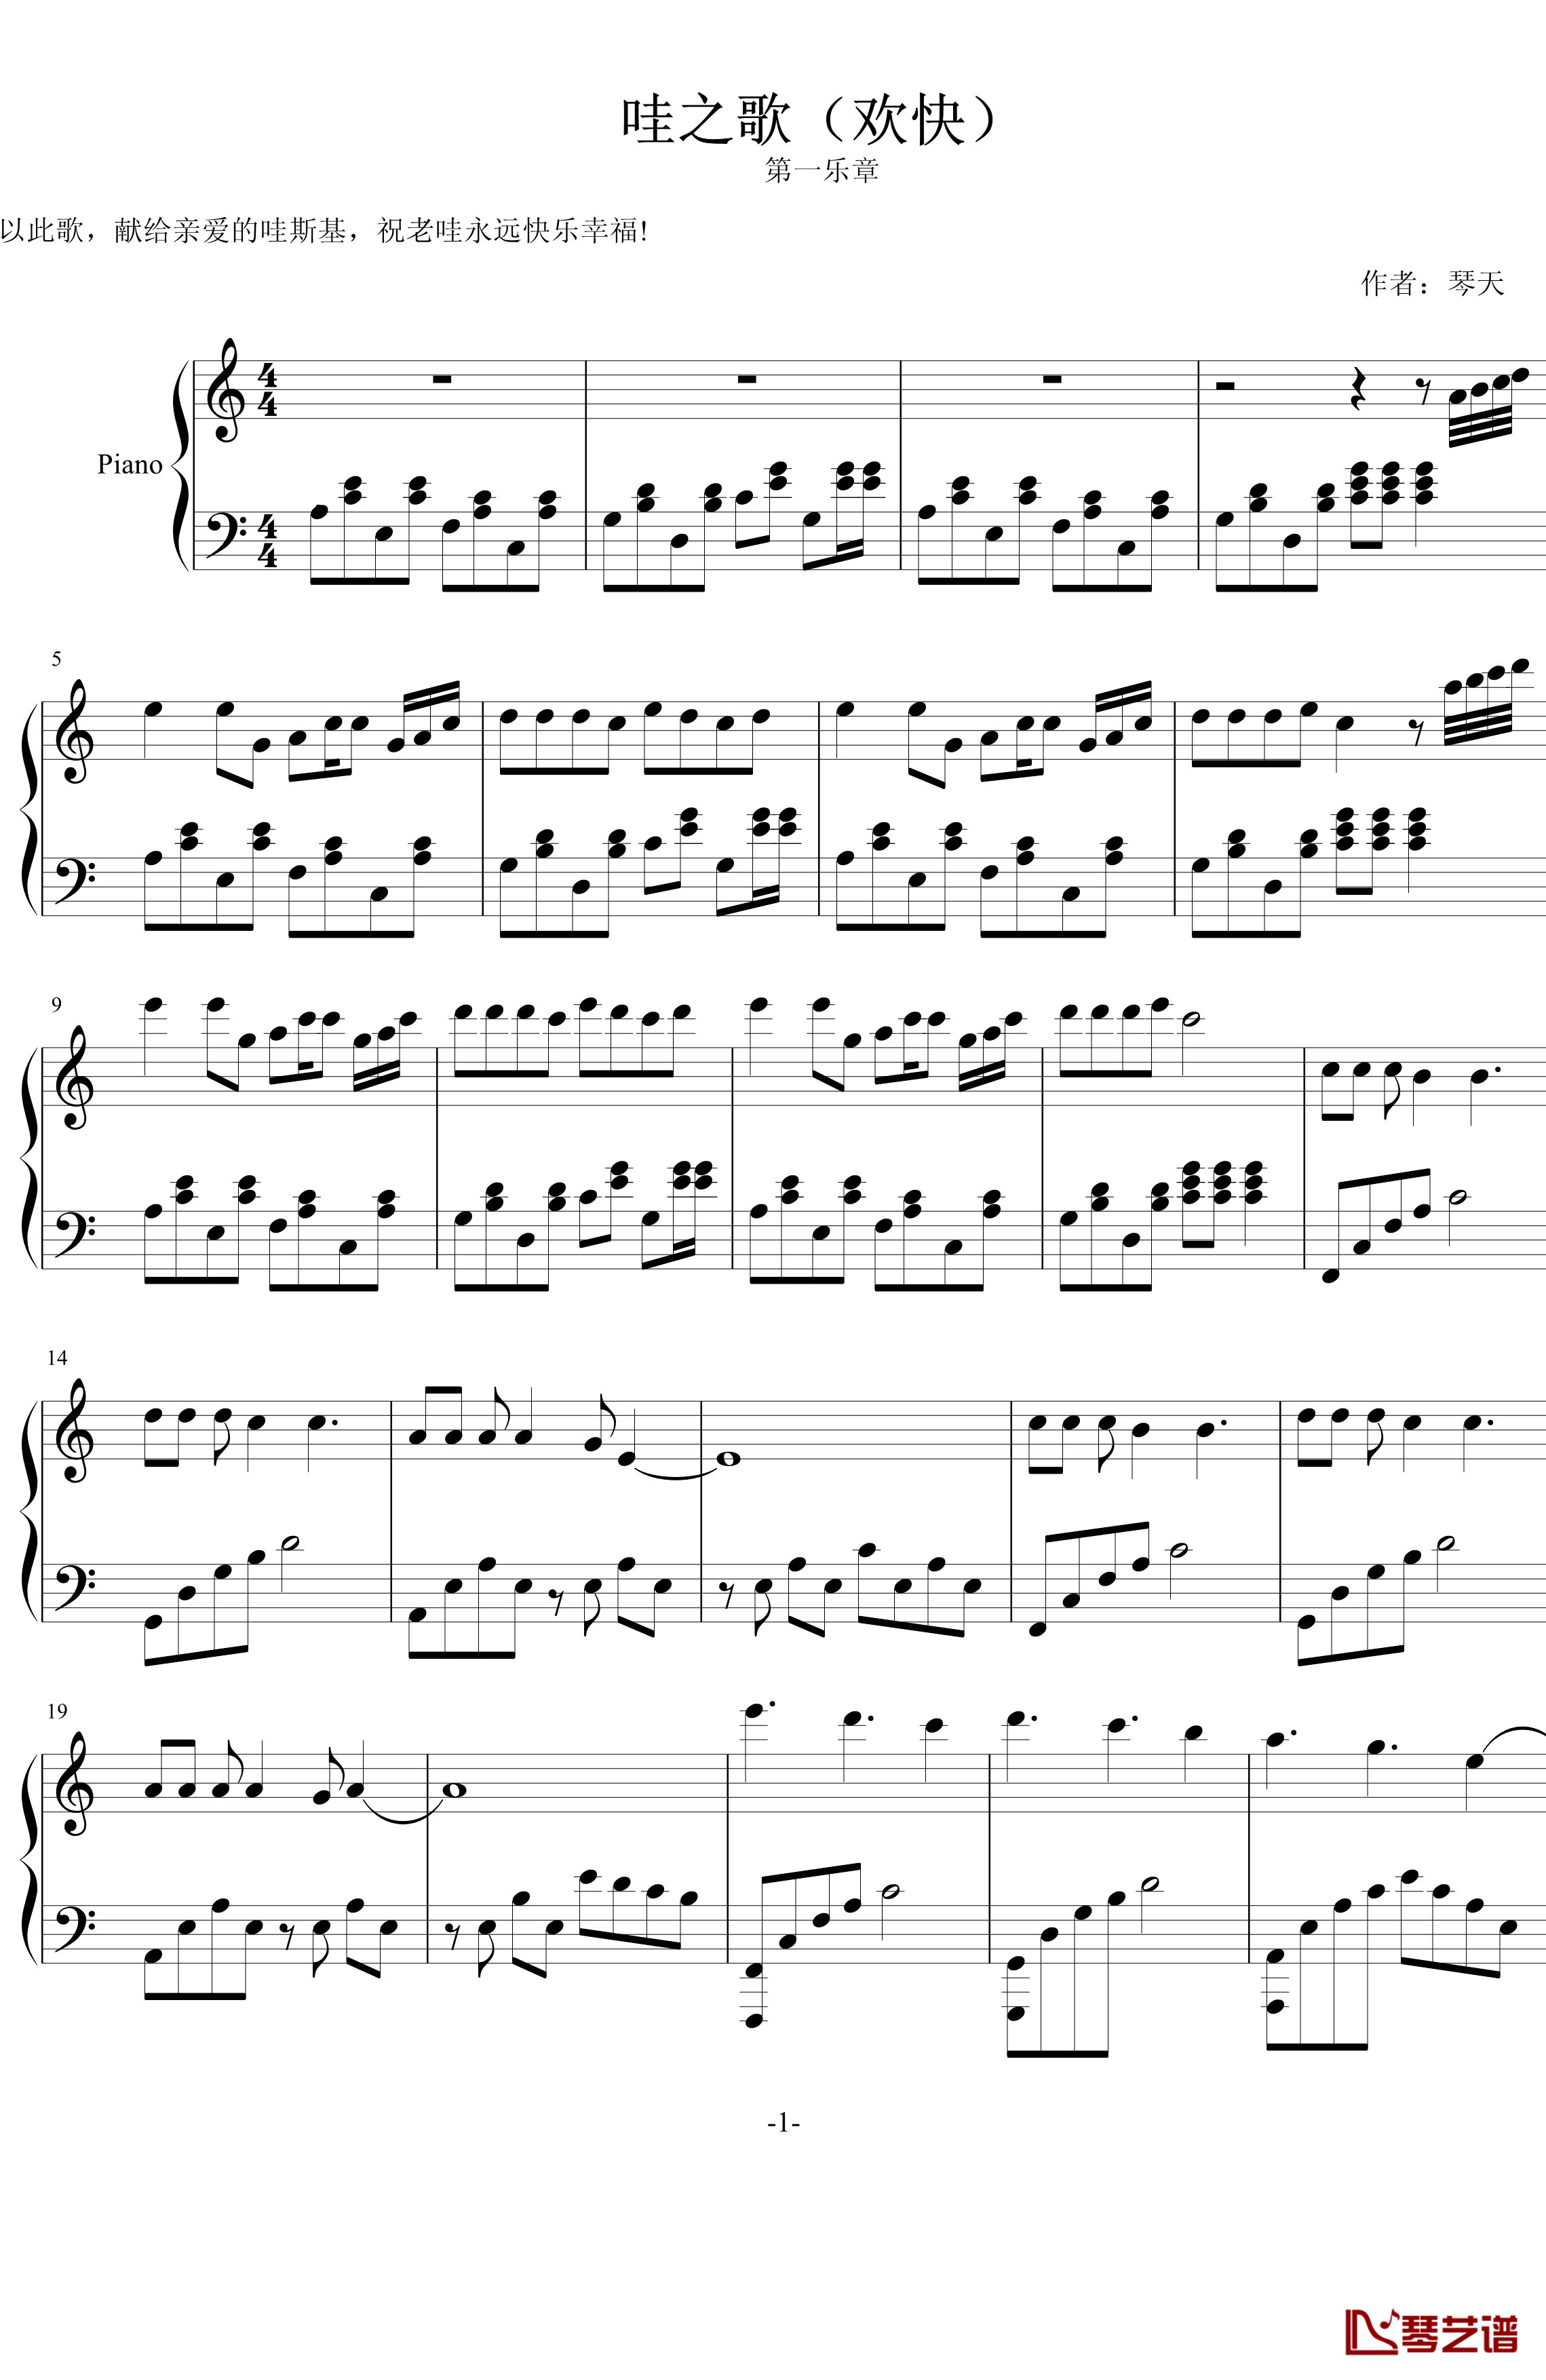 哇之歌钢琴谱-欢乐-lyjai7701